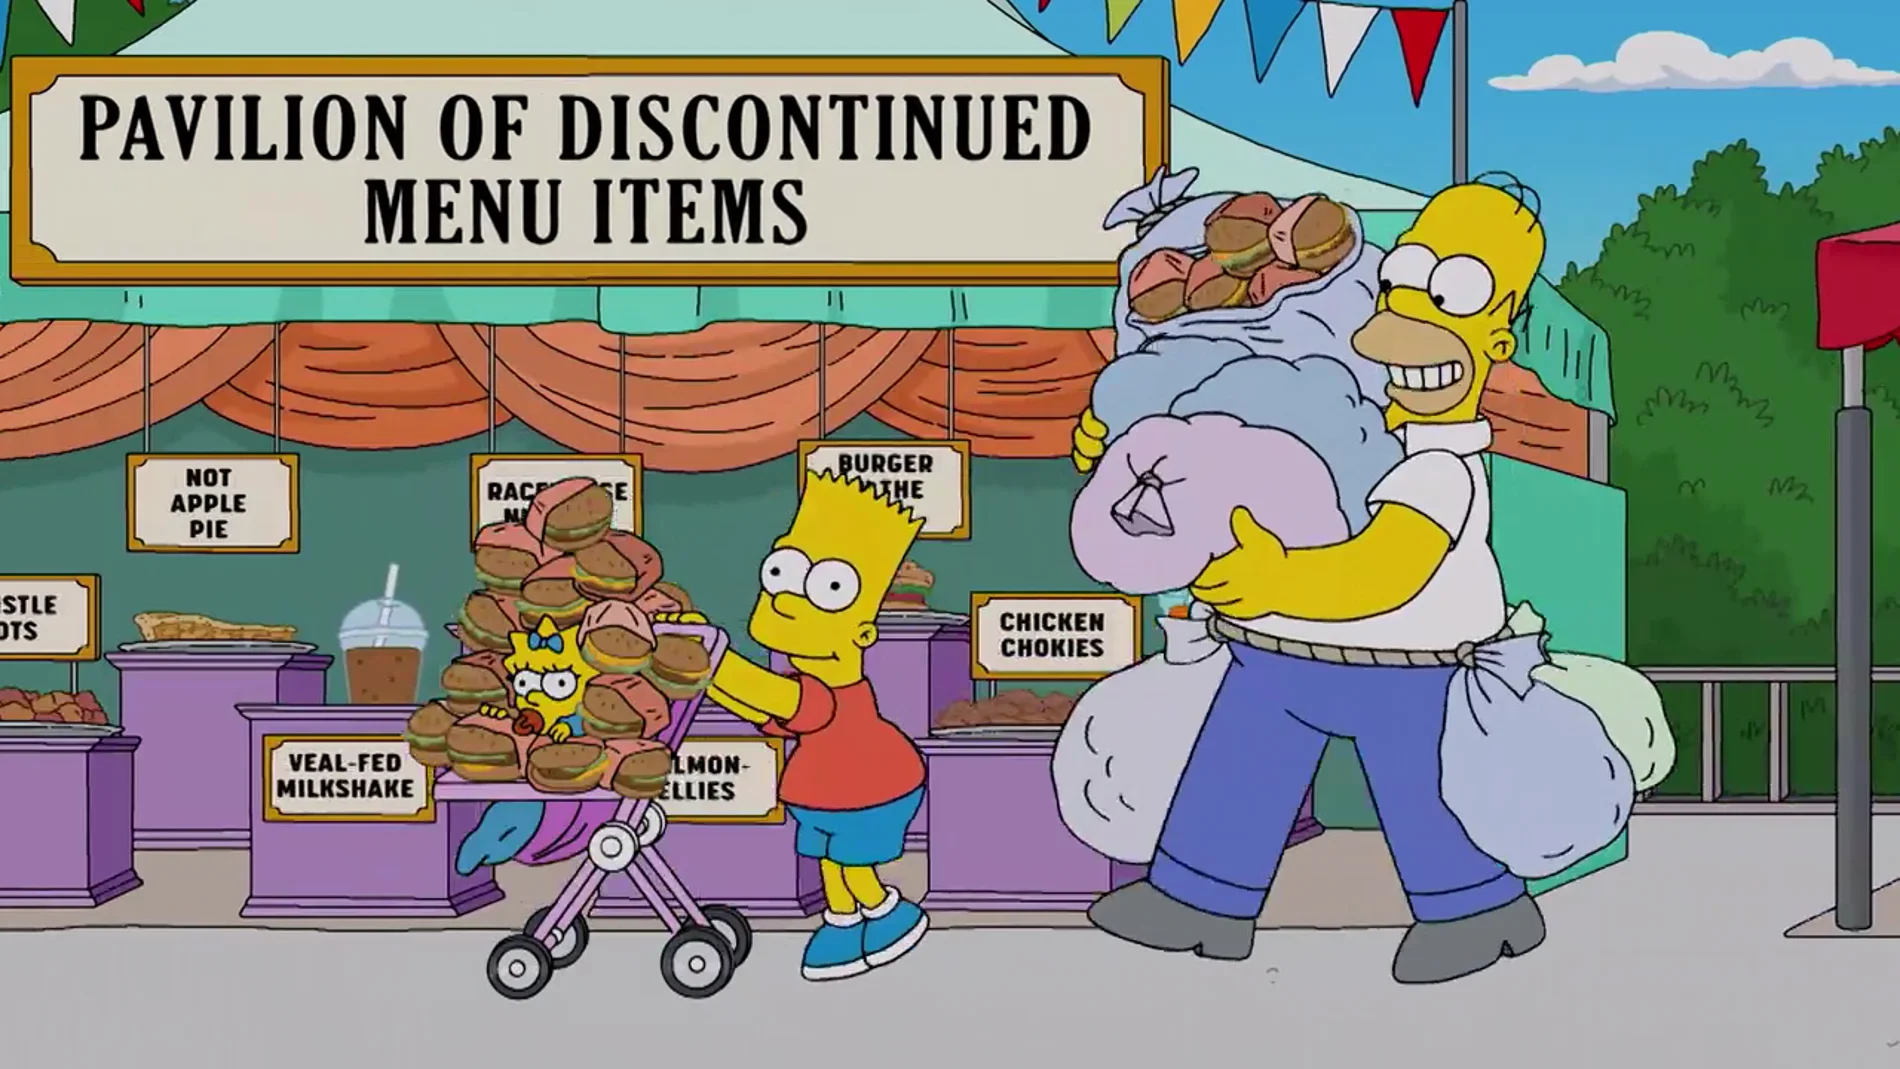 La maldición de la familia Simpson ocurre de nuevo